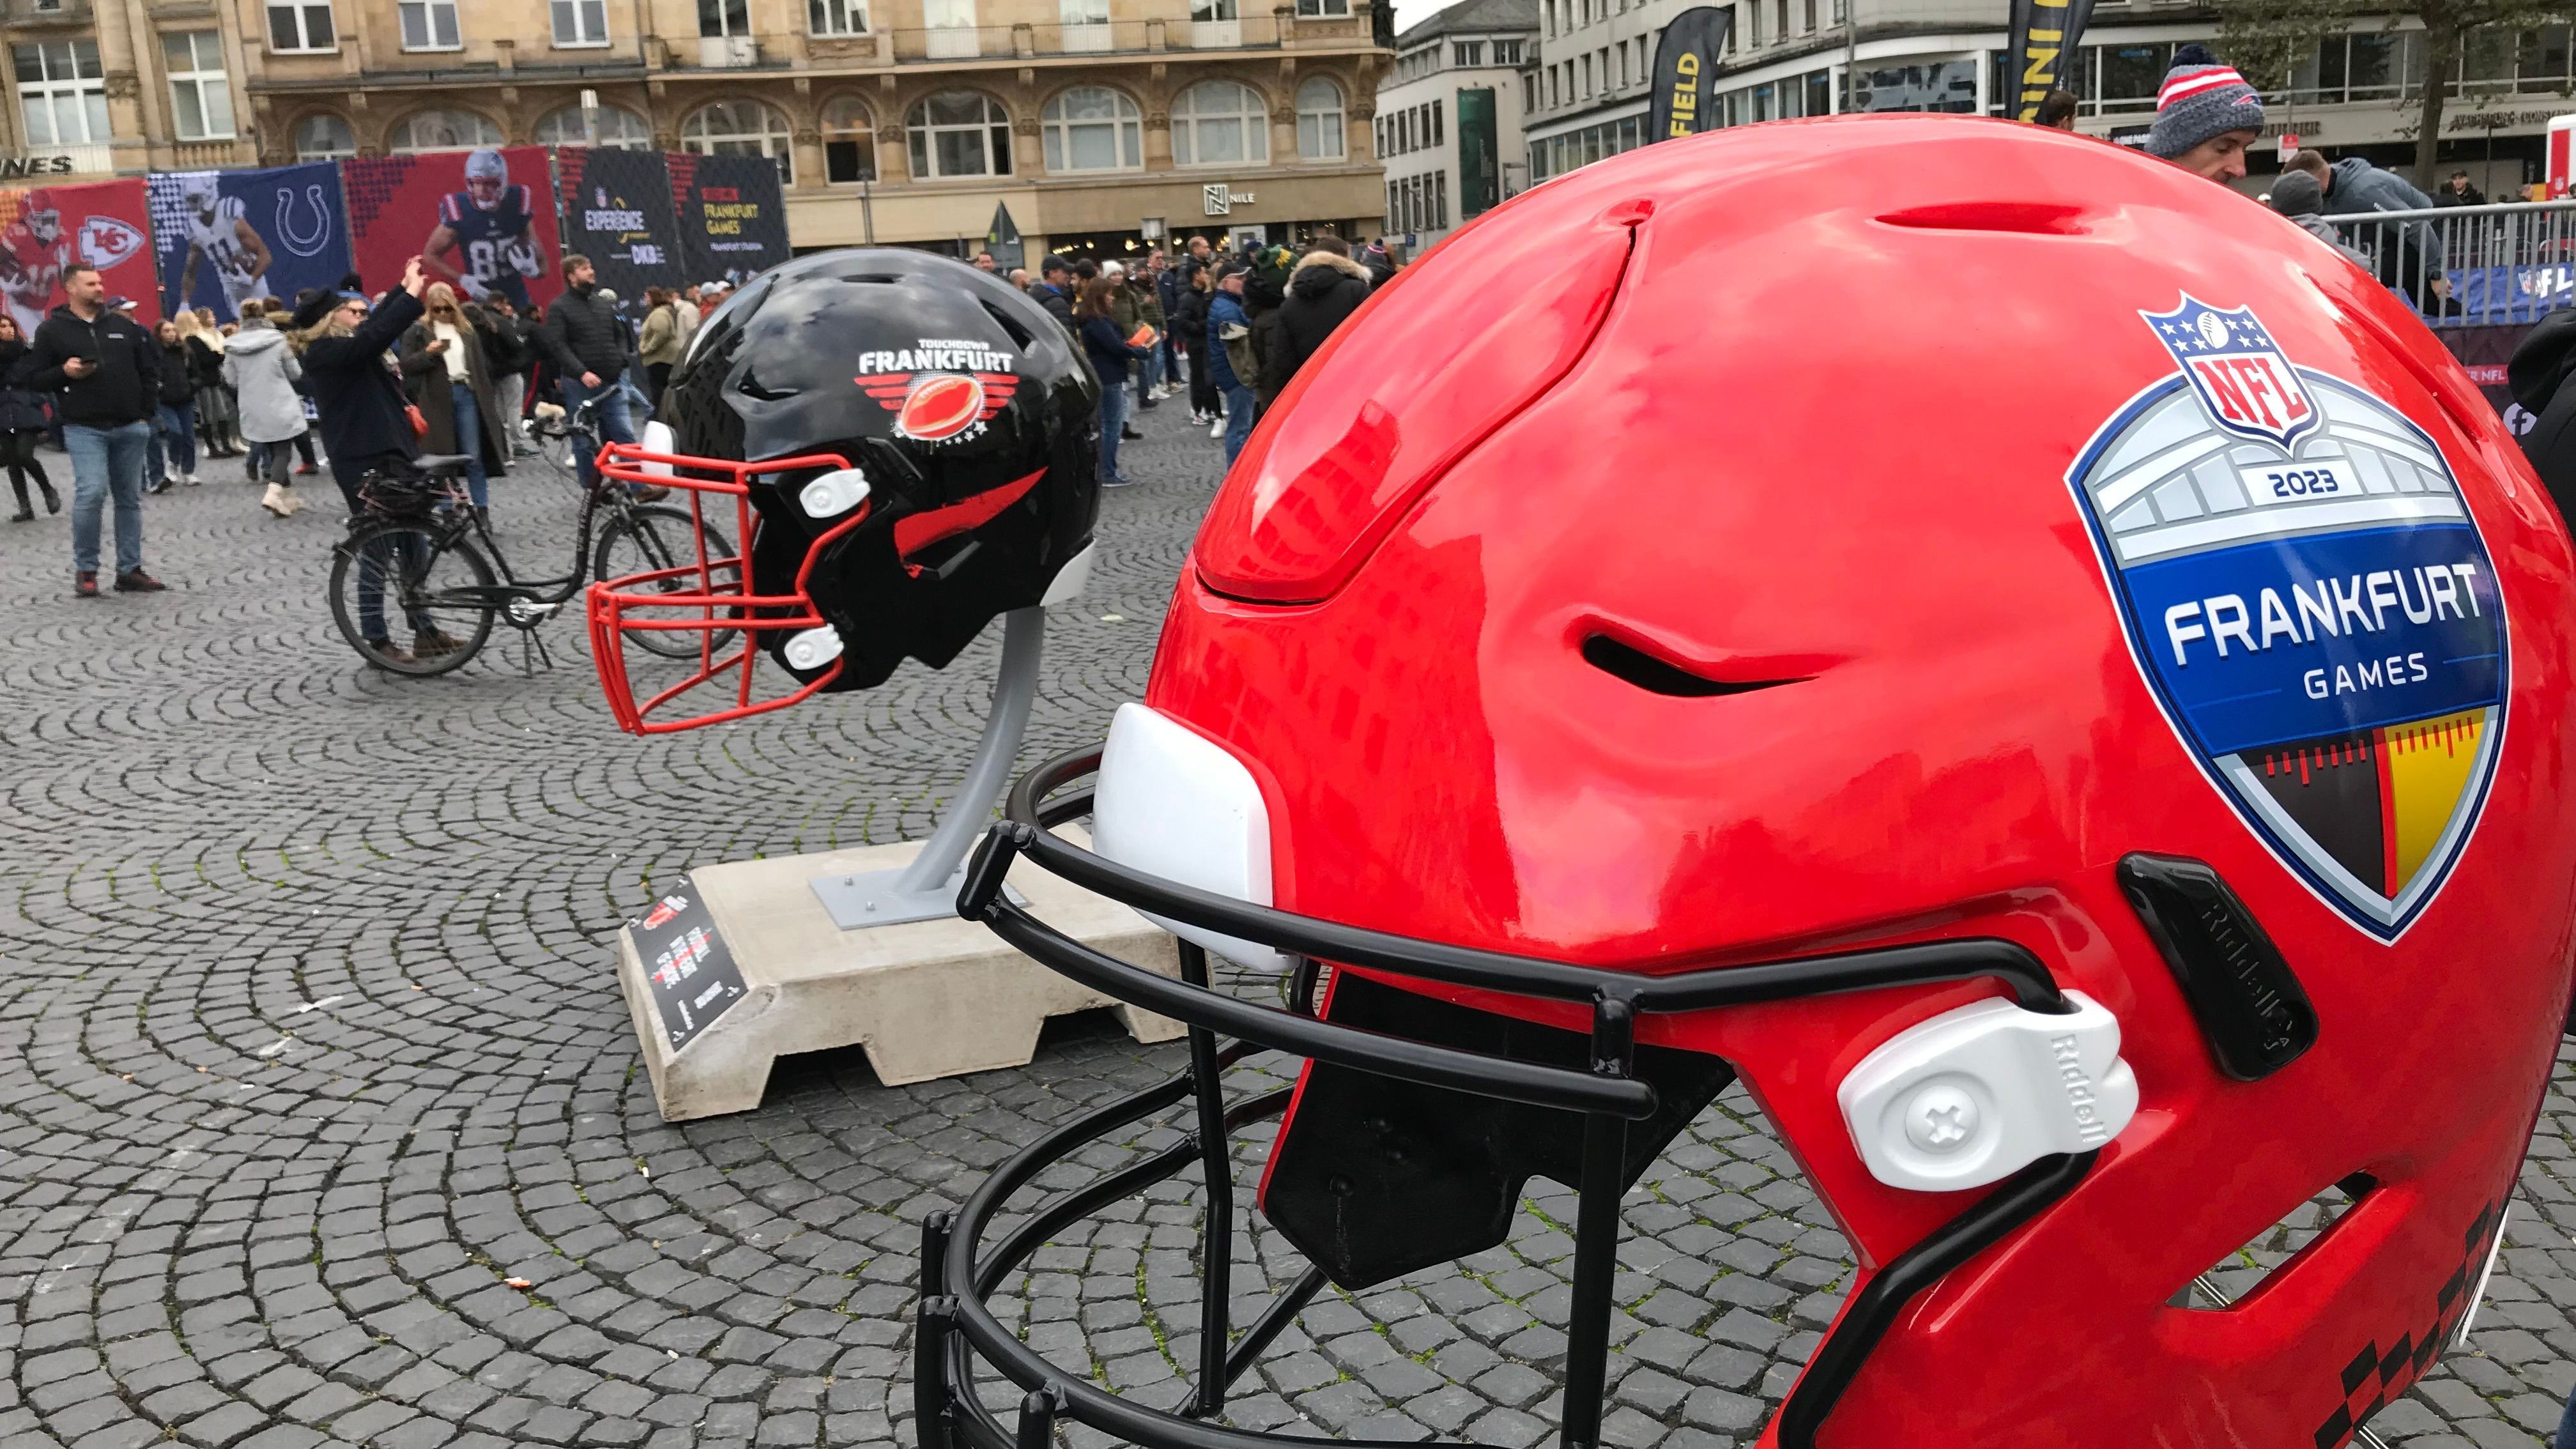 <strong>Helme überall</strong><br>Insgesamt waren 34 Helme zwischen Roßmarkt und Hauptwache aufgestellt - neben denen der 32 NFL-Teams auch ein roter mit dem Logo der Frankfurt Games sowie ein schwarzer mit dem Schriftzug Touchdown Frankfurt.